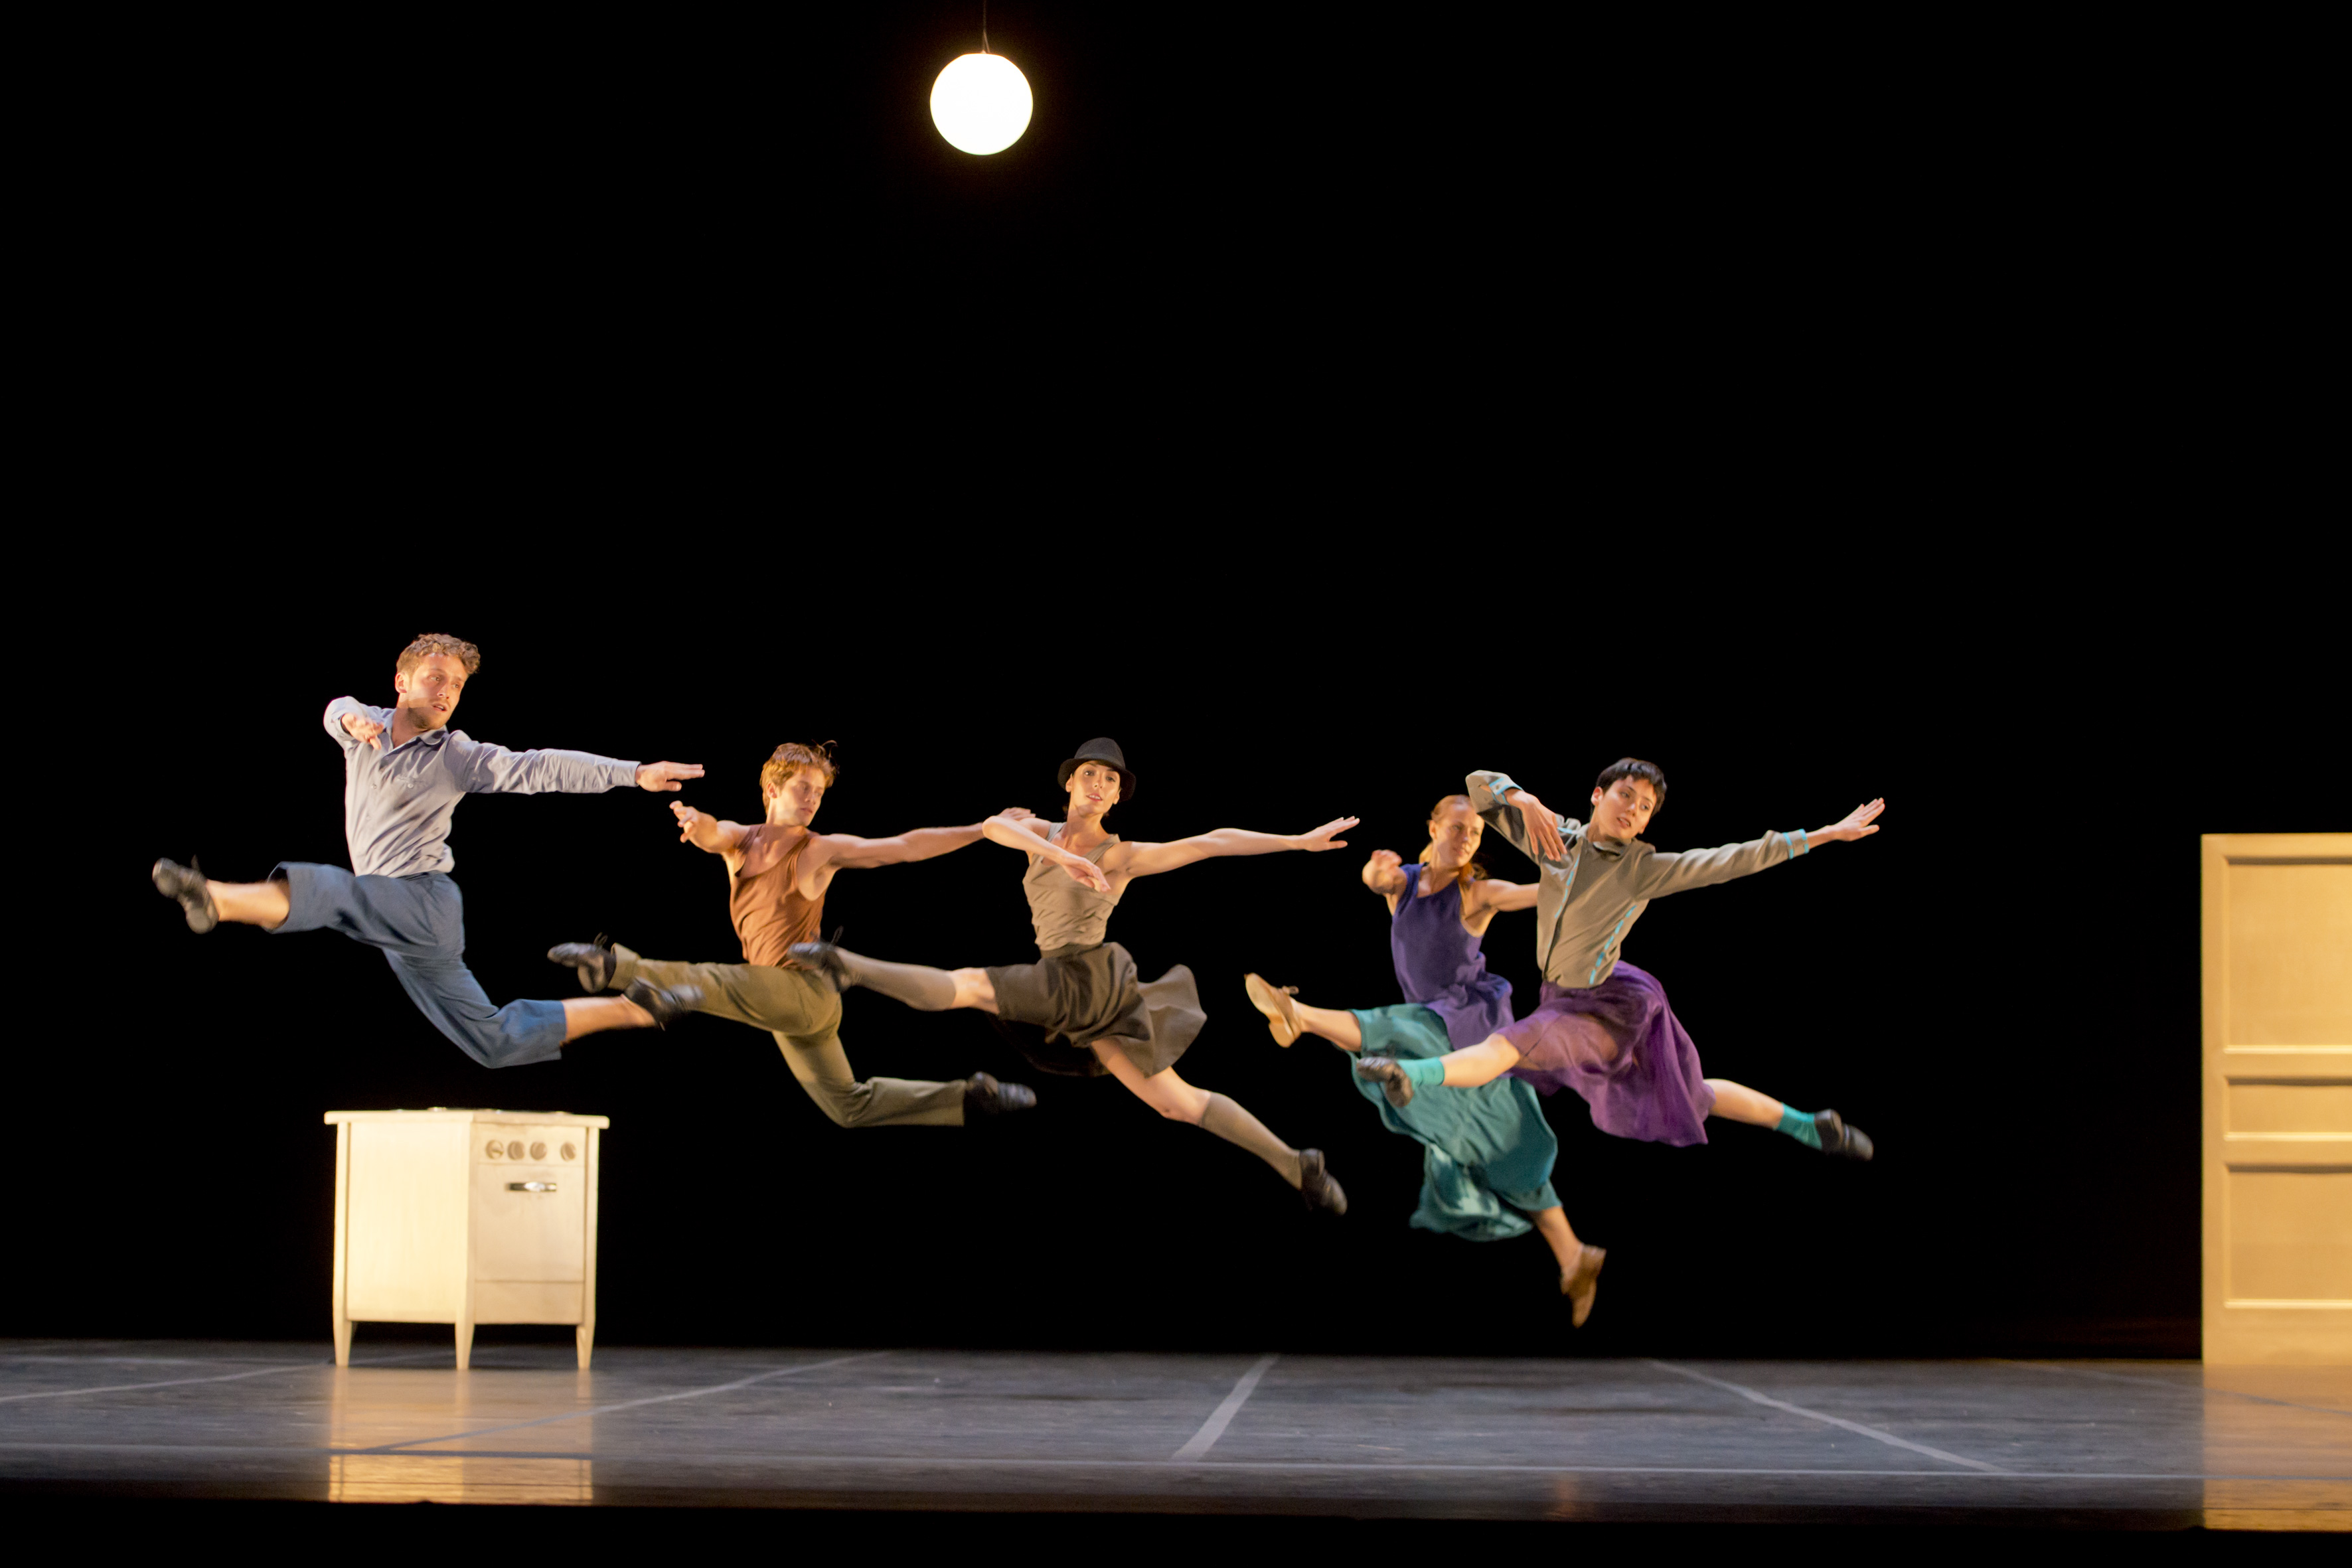 El elenco de la CND en "Casi-Casa" del coreógrafo sueco Mats Ek. Fotografía: Jesús Vallinas/ Compañía Nacional de Danza.